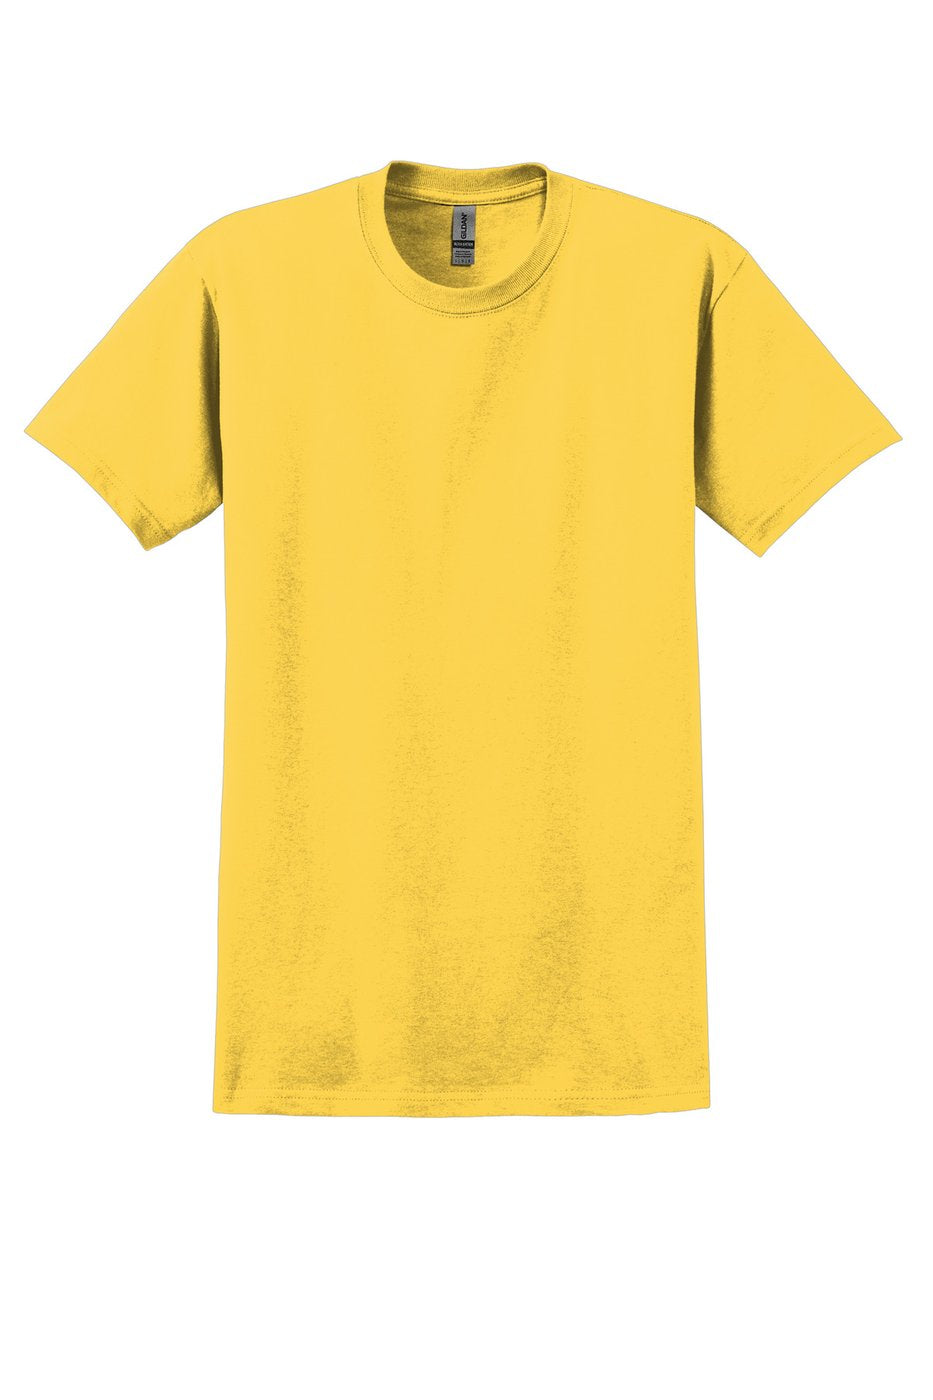 Gildan Heavyweight Cotton T-Shirt